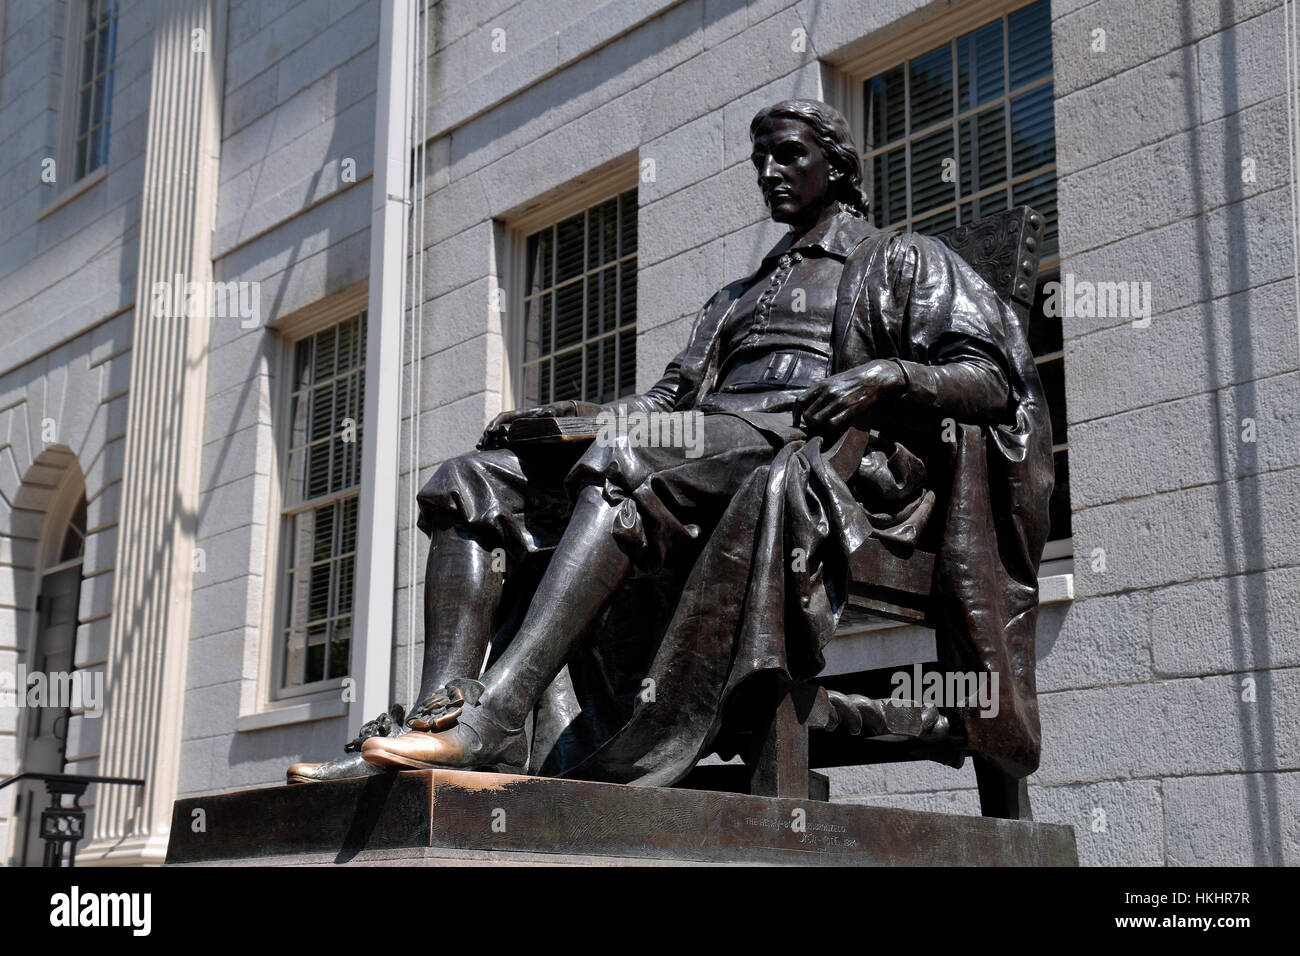 John Harvard ist eine Skulptur aus Bronze von Daniel Chester French in Harvard Yard Harvard University, Boston, Cambridge, MA, Vereinigte Staaten von Amerika. Stockfoto